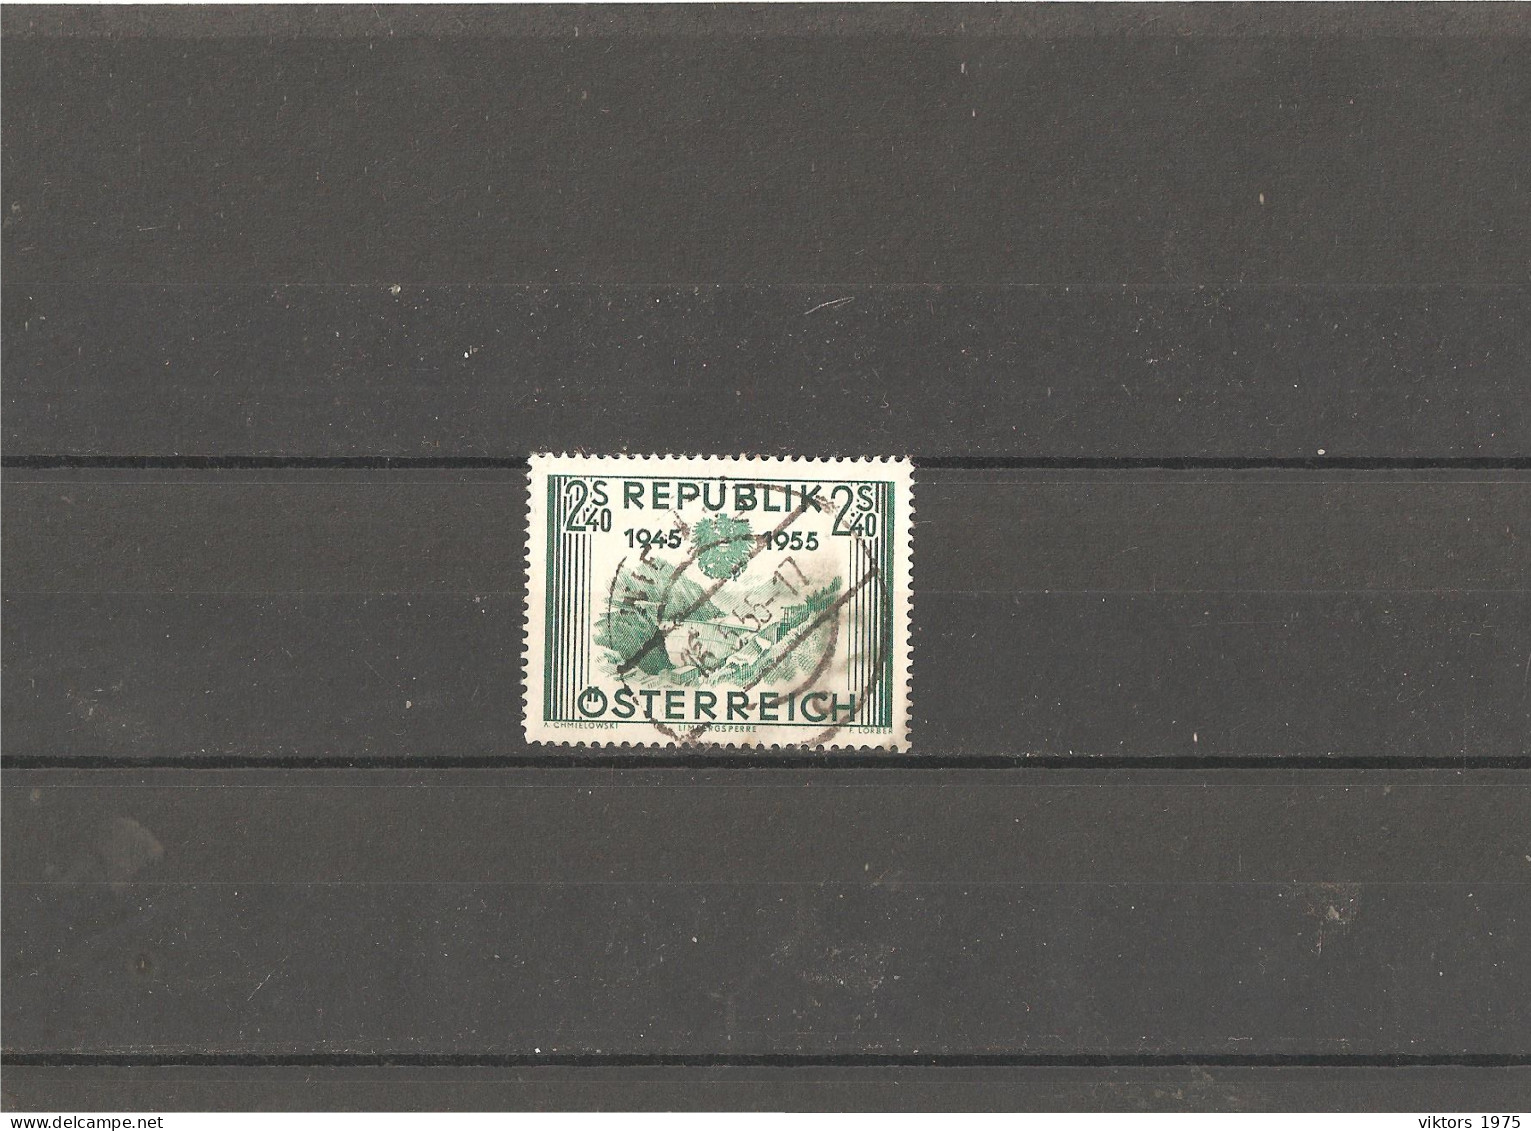 Used Stamp Nr.1016 In MICHEL Catalog - Usati